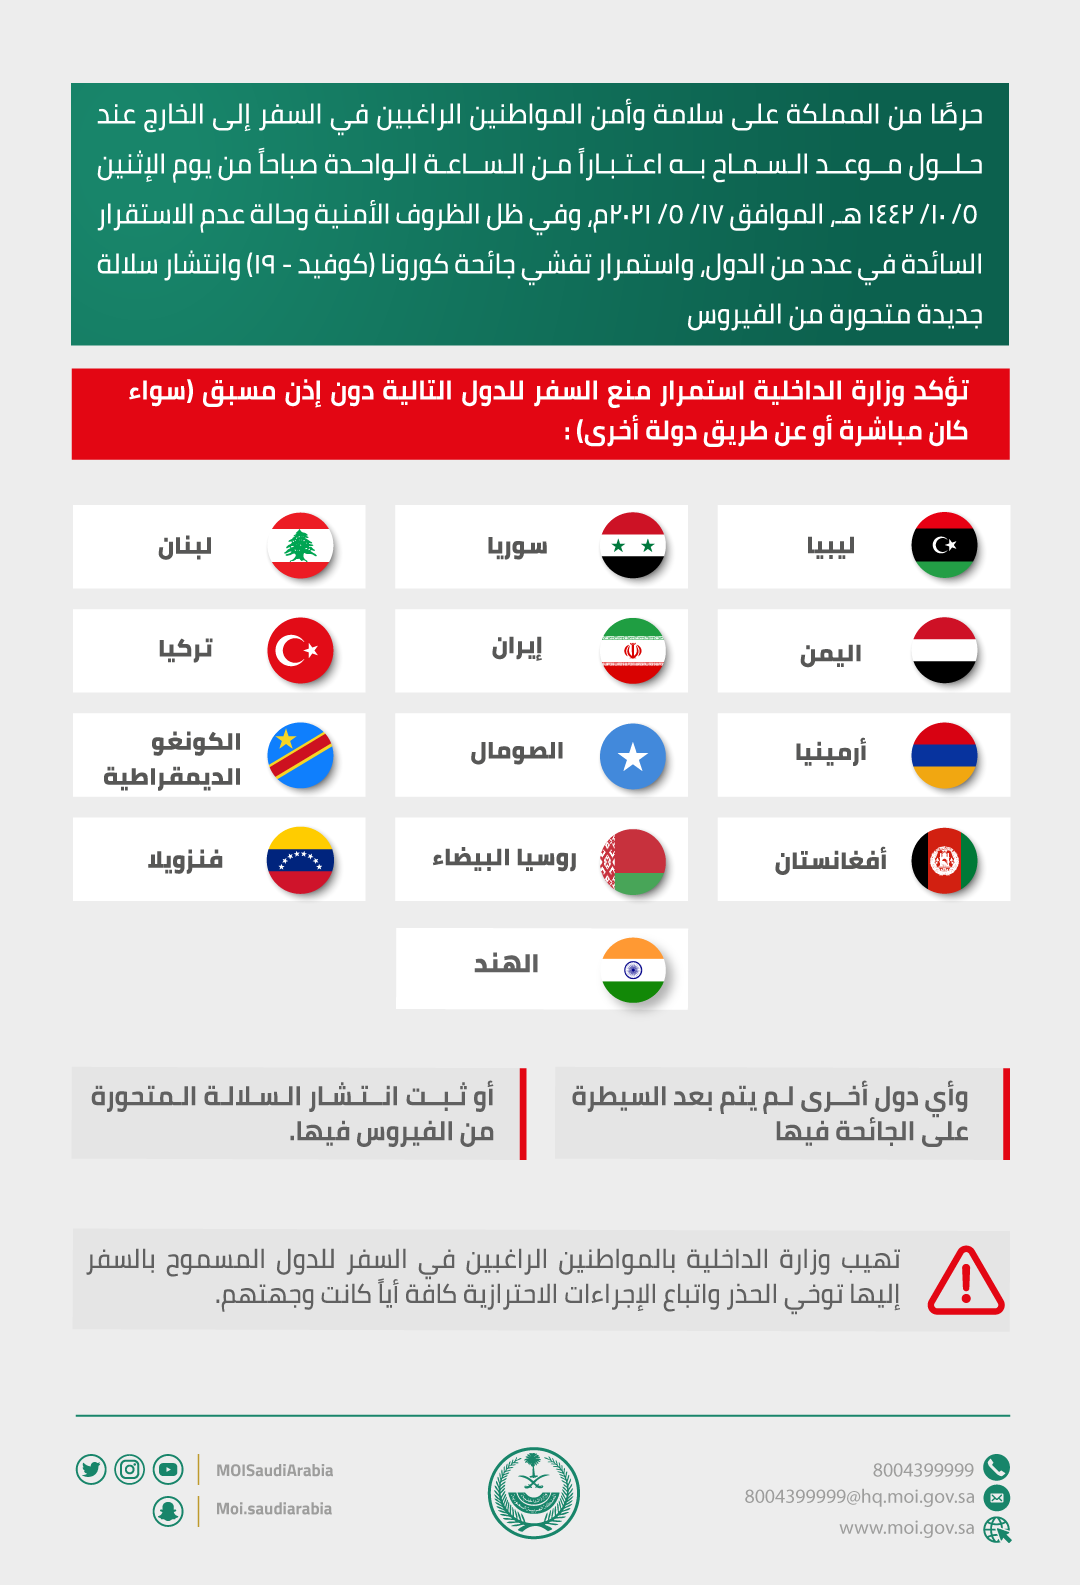 الممنوع للسعوديين الدول وزارة الخارجية السفر إليها ما هي